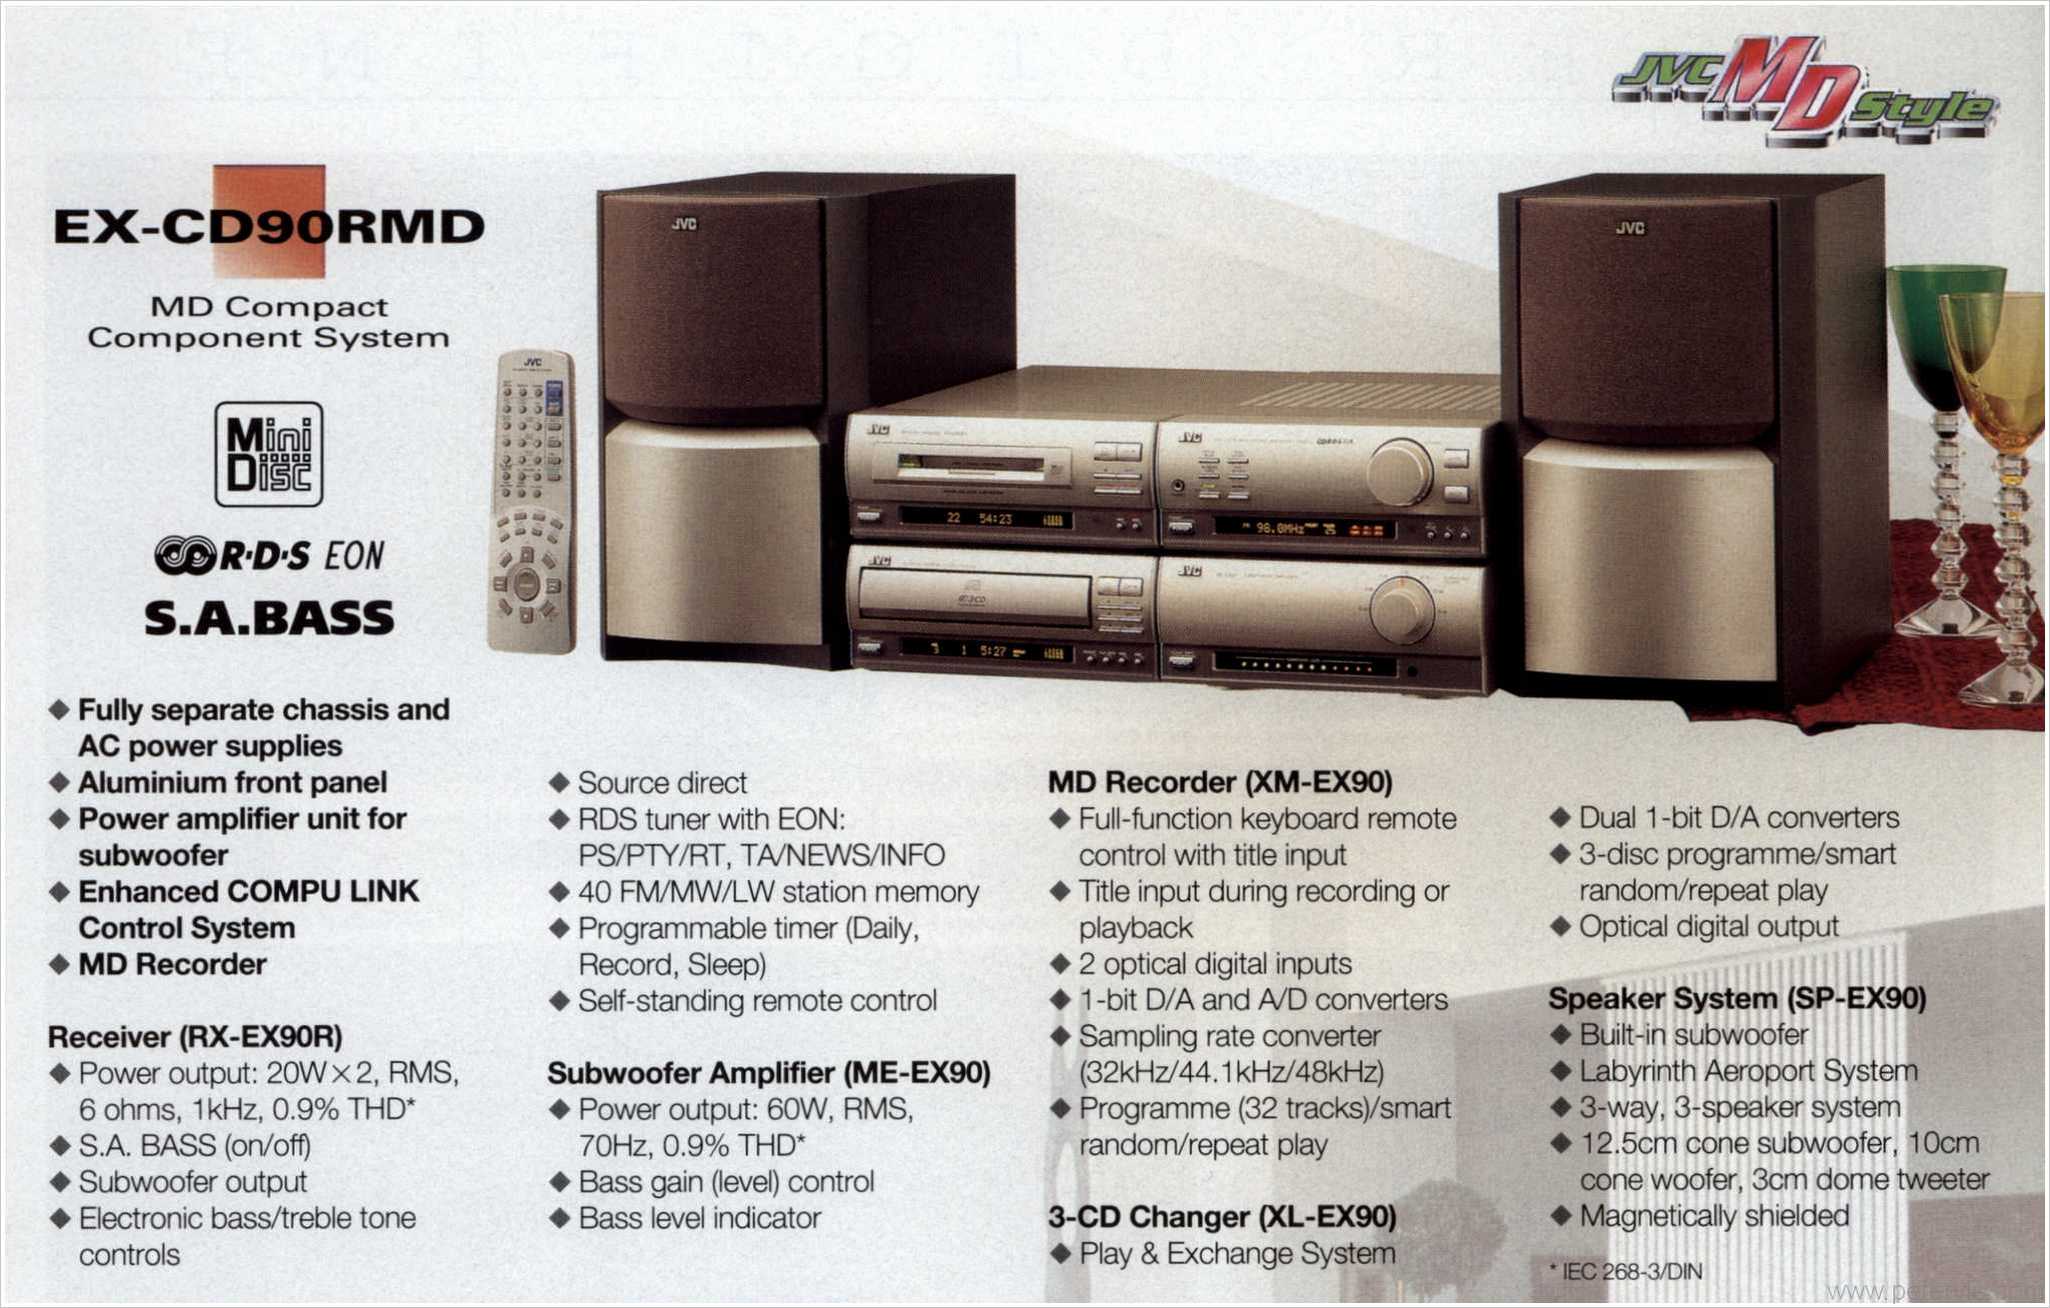 EX-CD90RMD